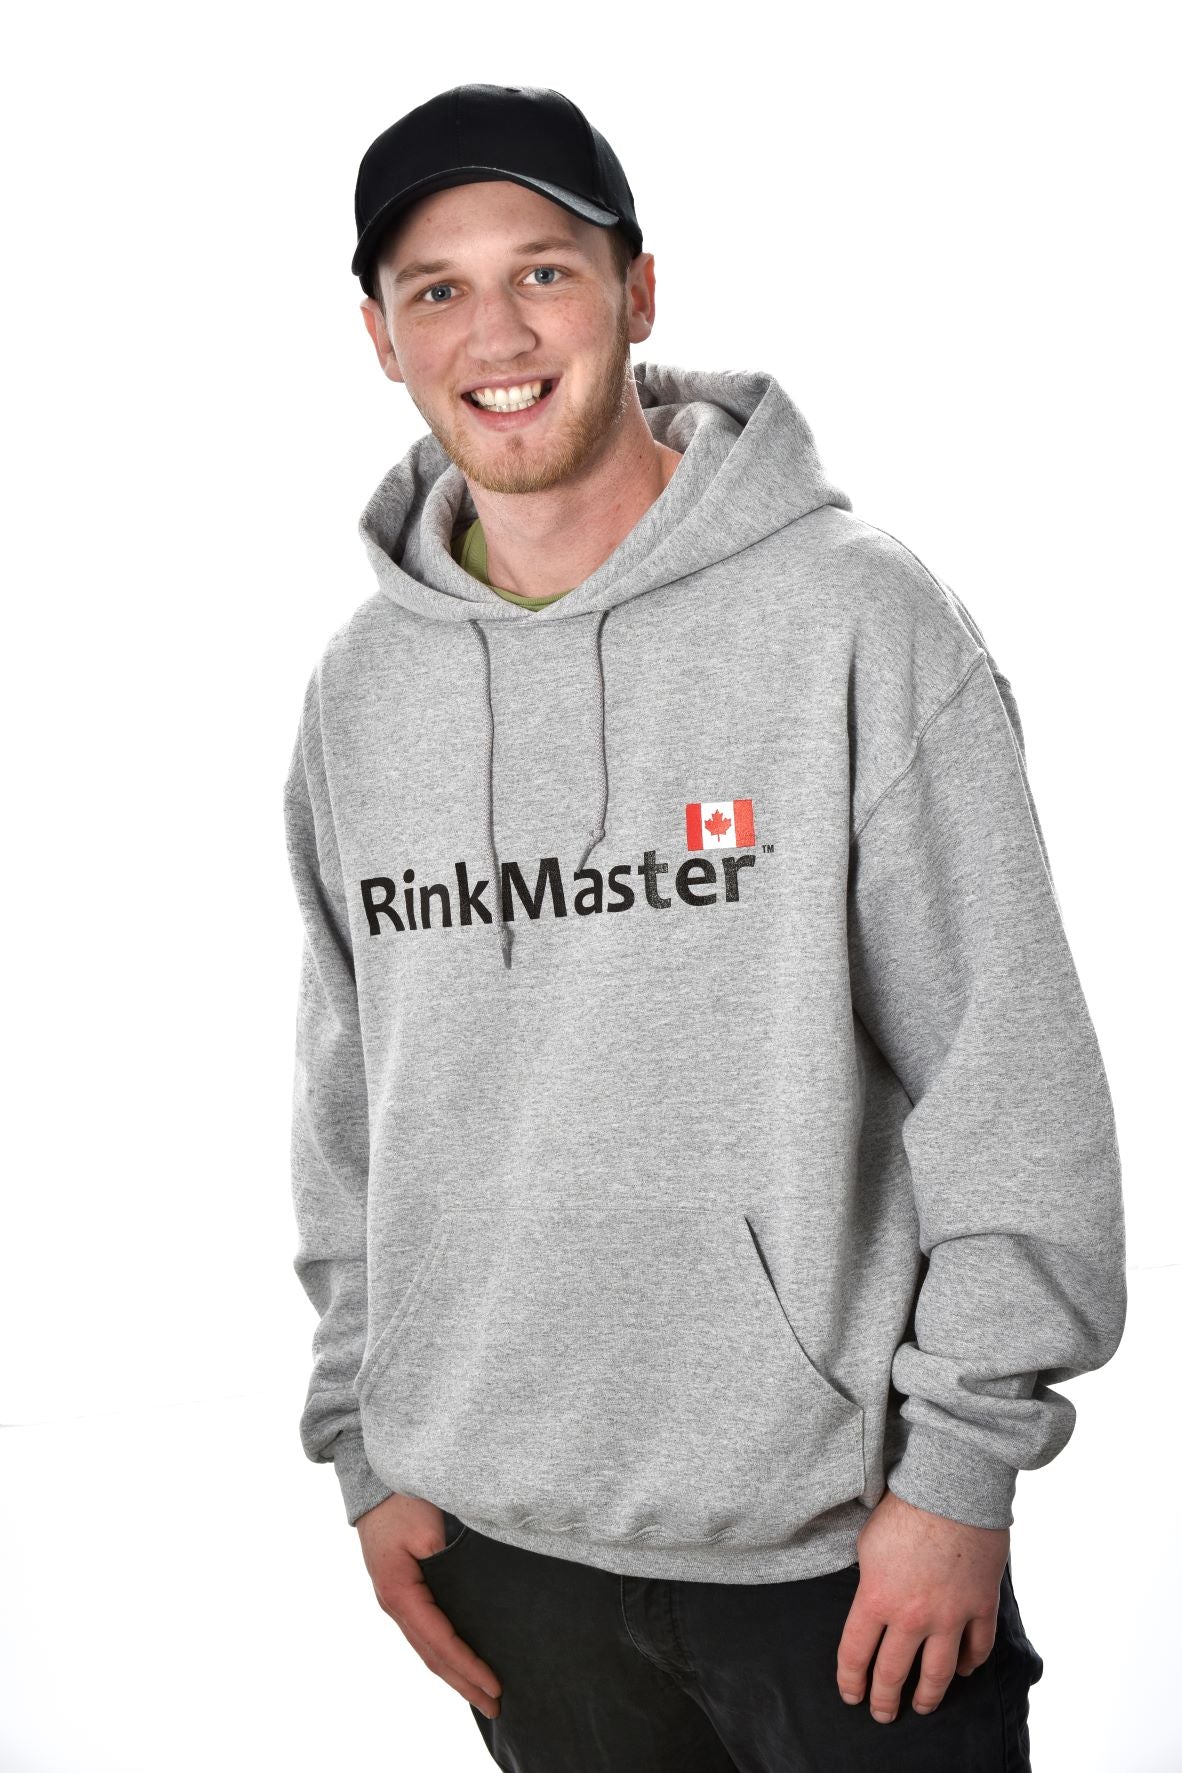 RinkMaster Hoodies